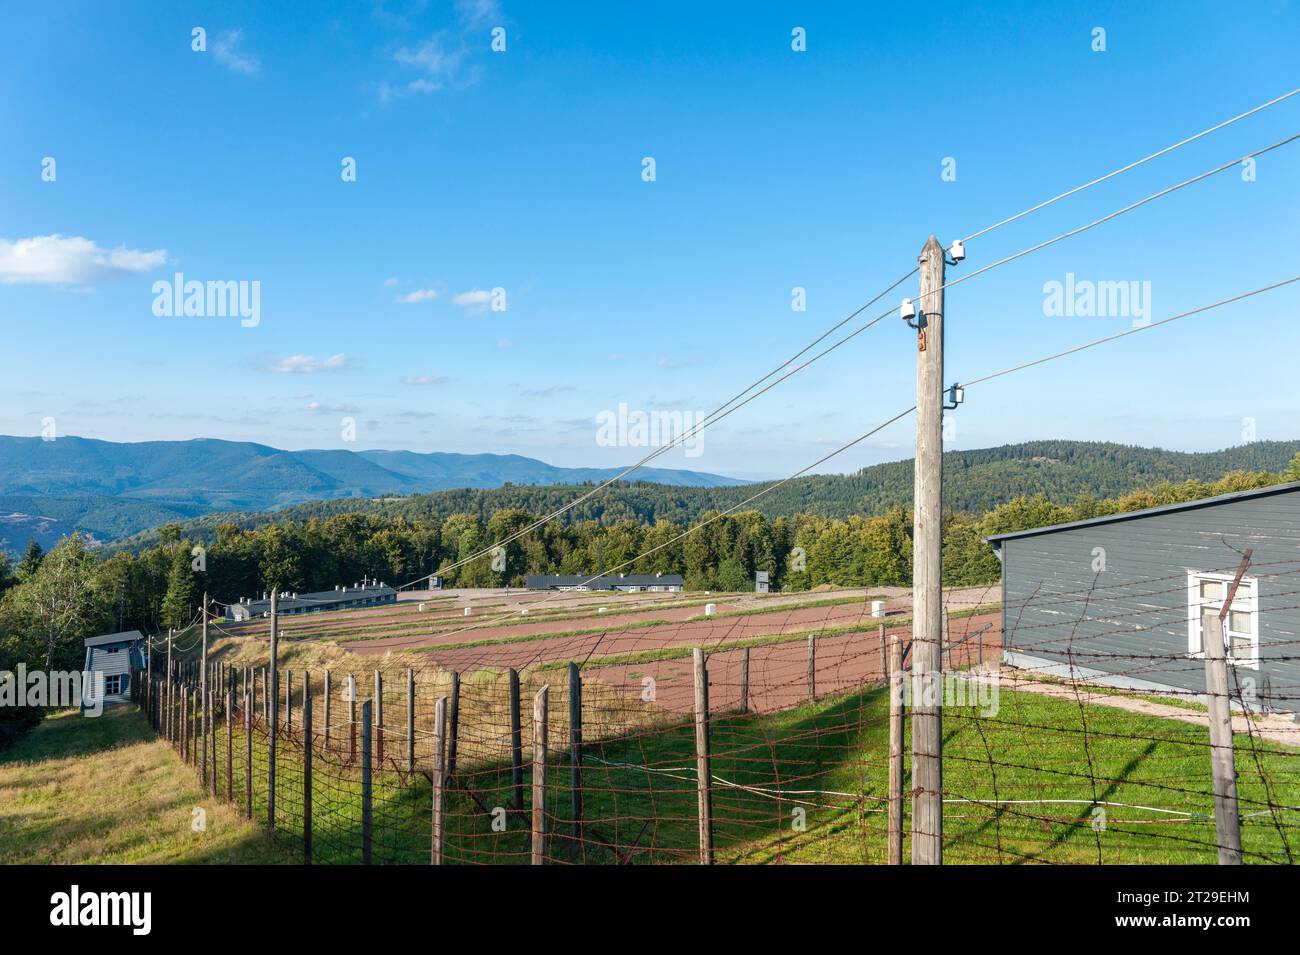 Vue sur le site de l'ancien camp de concentration de Natzweiler-Struthof, Natzwiller, Alsace, France, Europe Banque D'Images